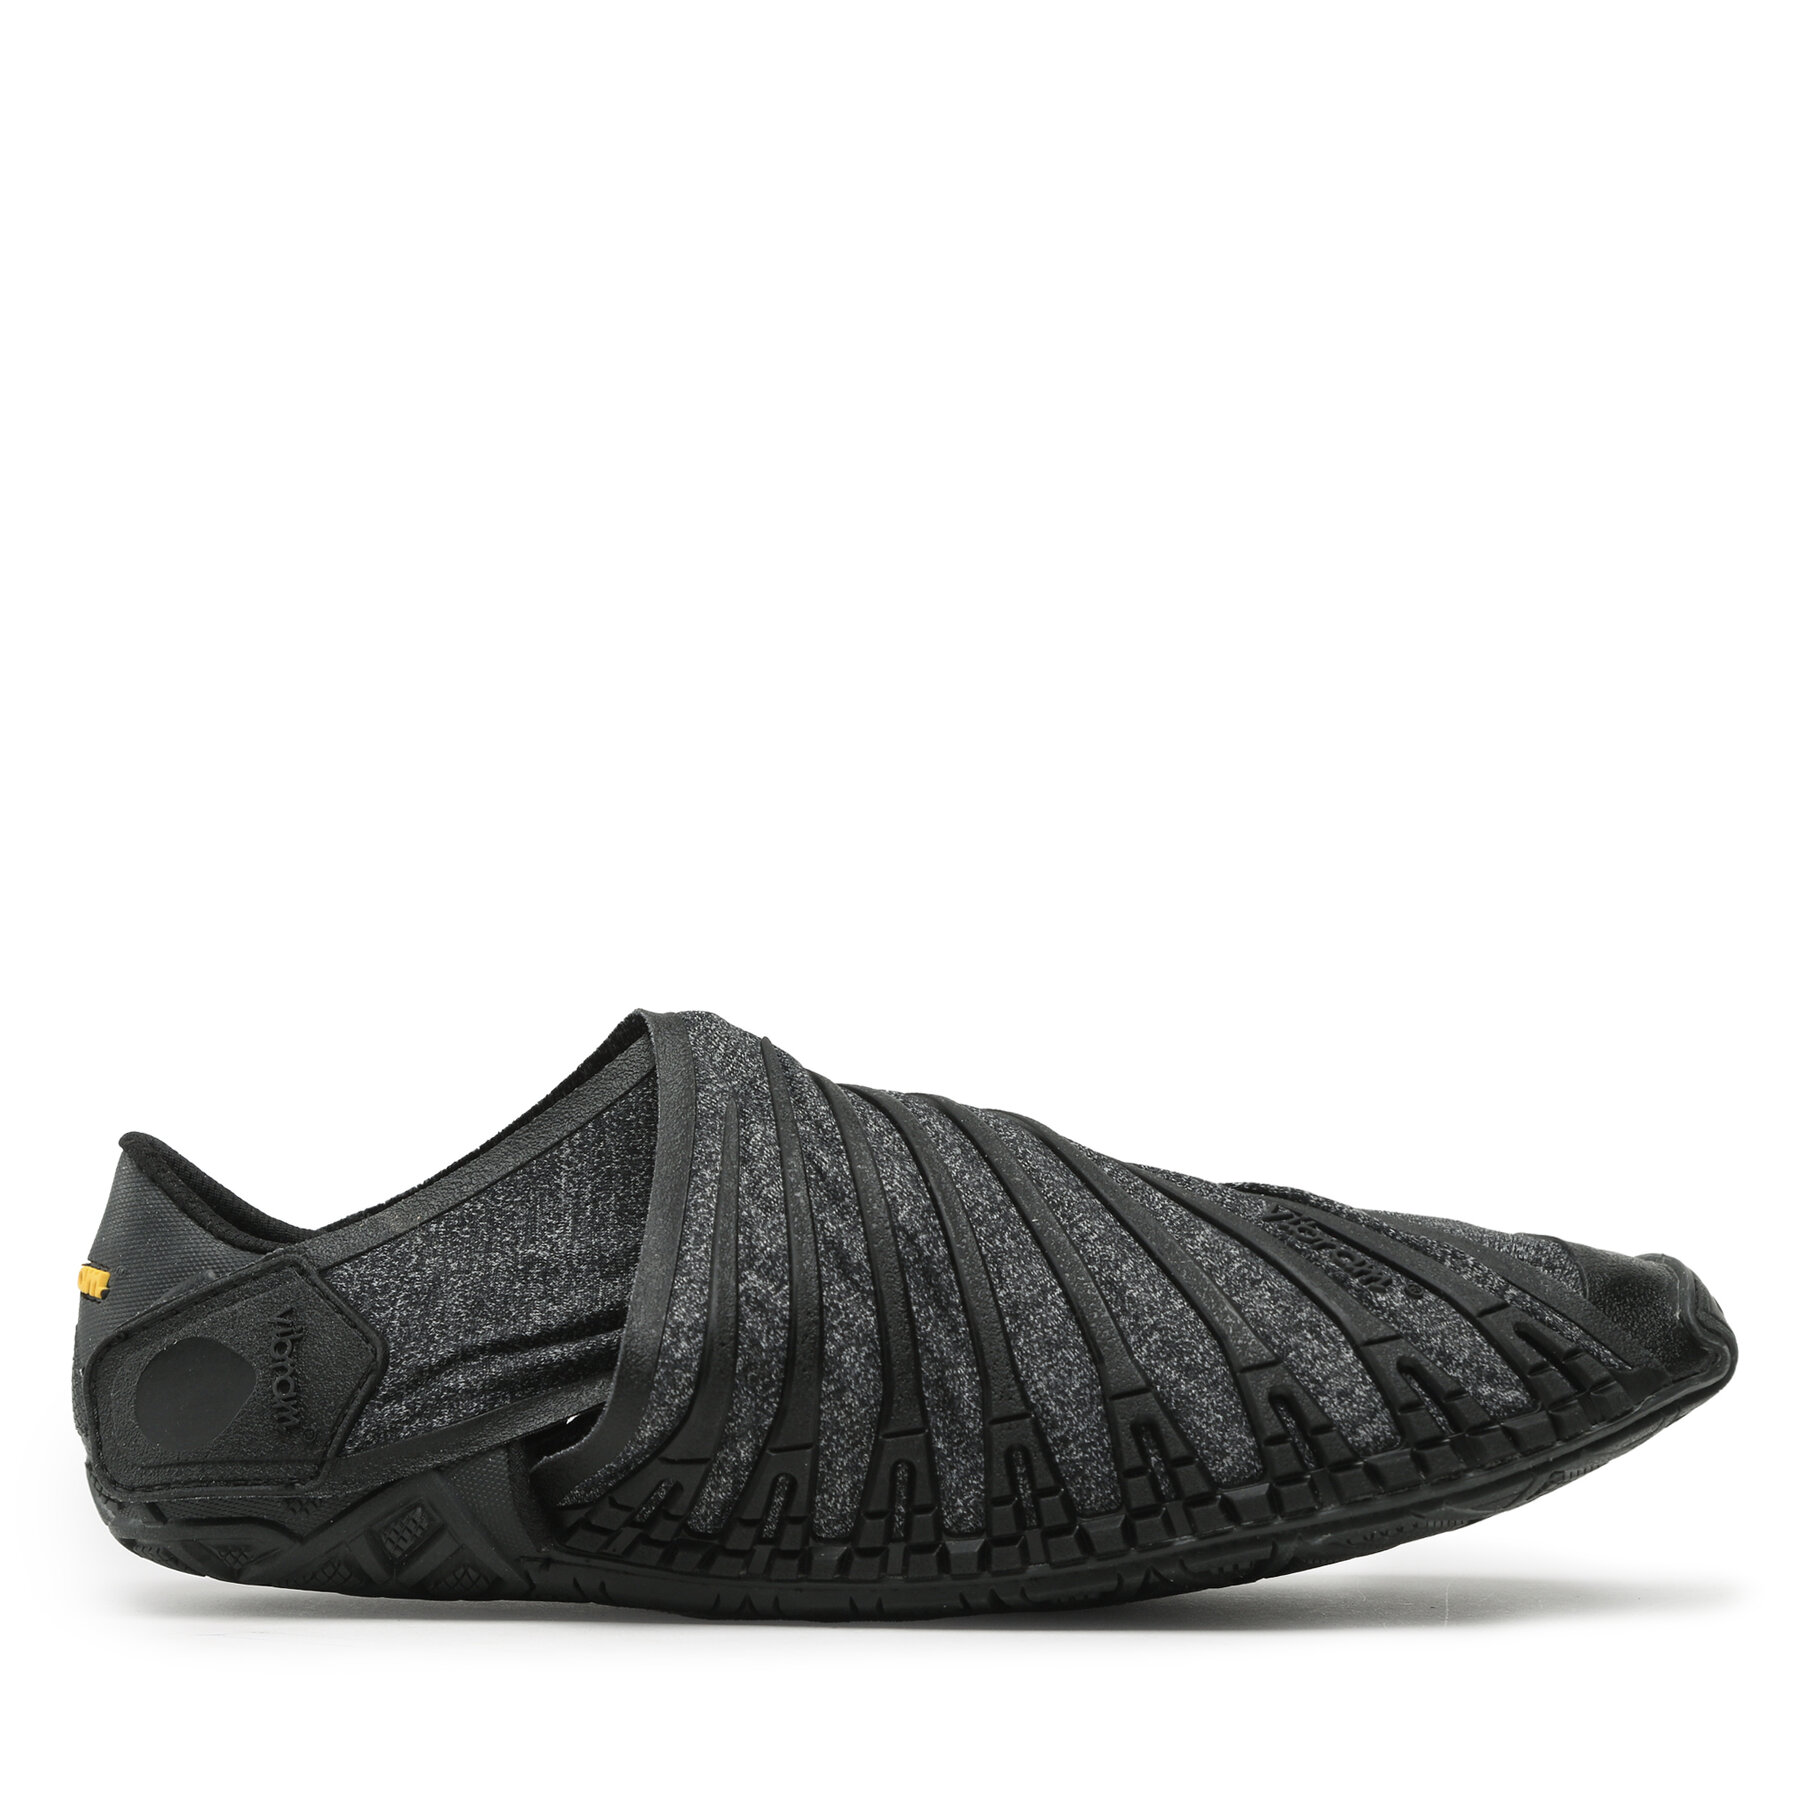 Schuhe Vibram Fivefingers Furoshiki 22MAF01 Black von Vibram Fivefingers